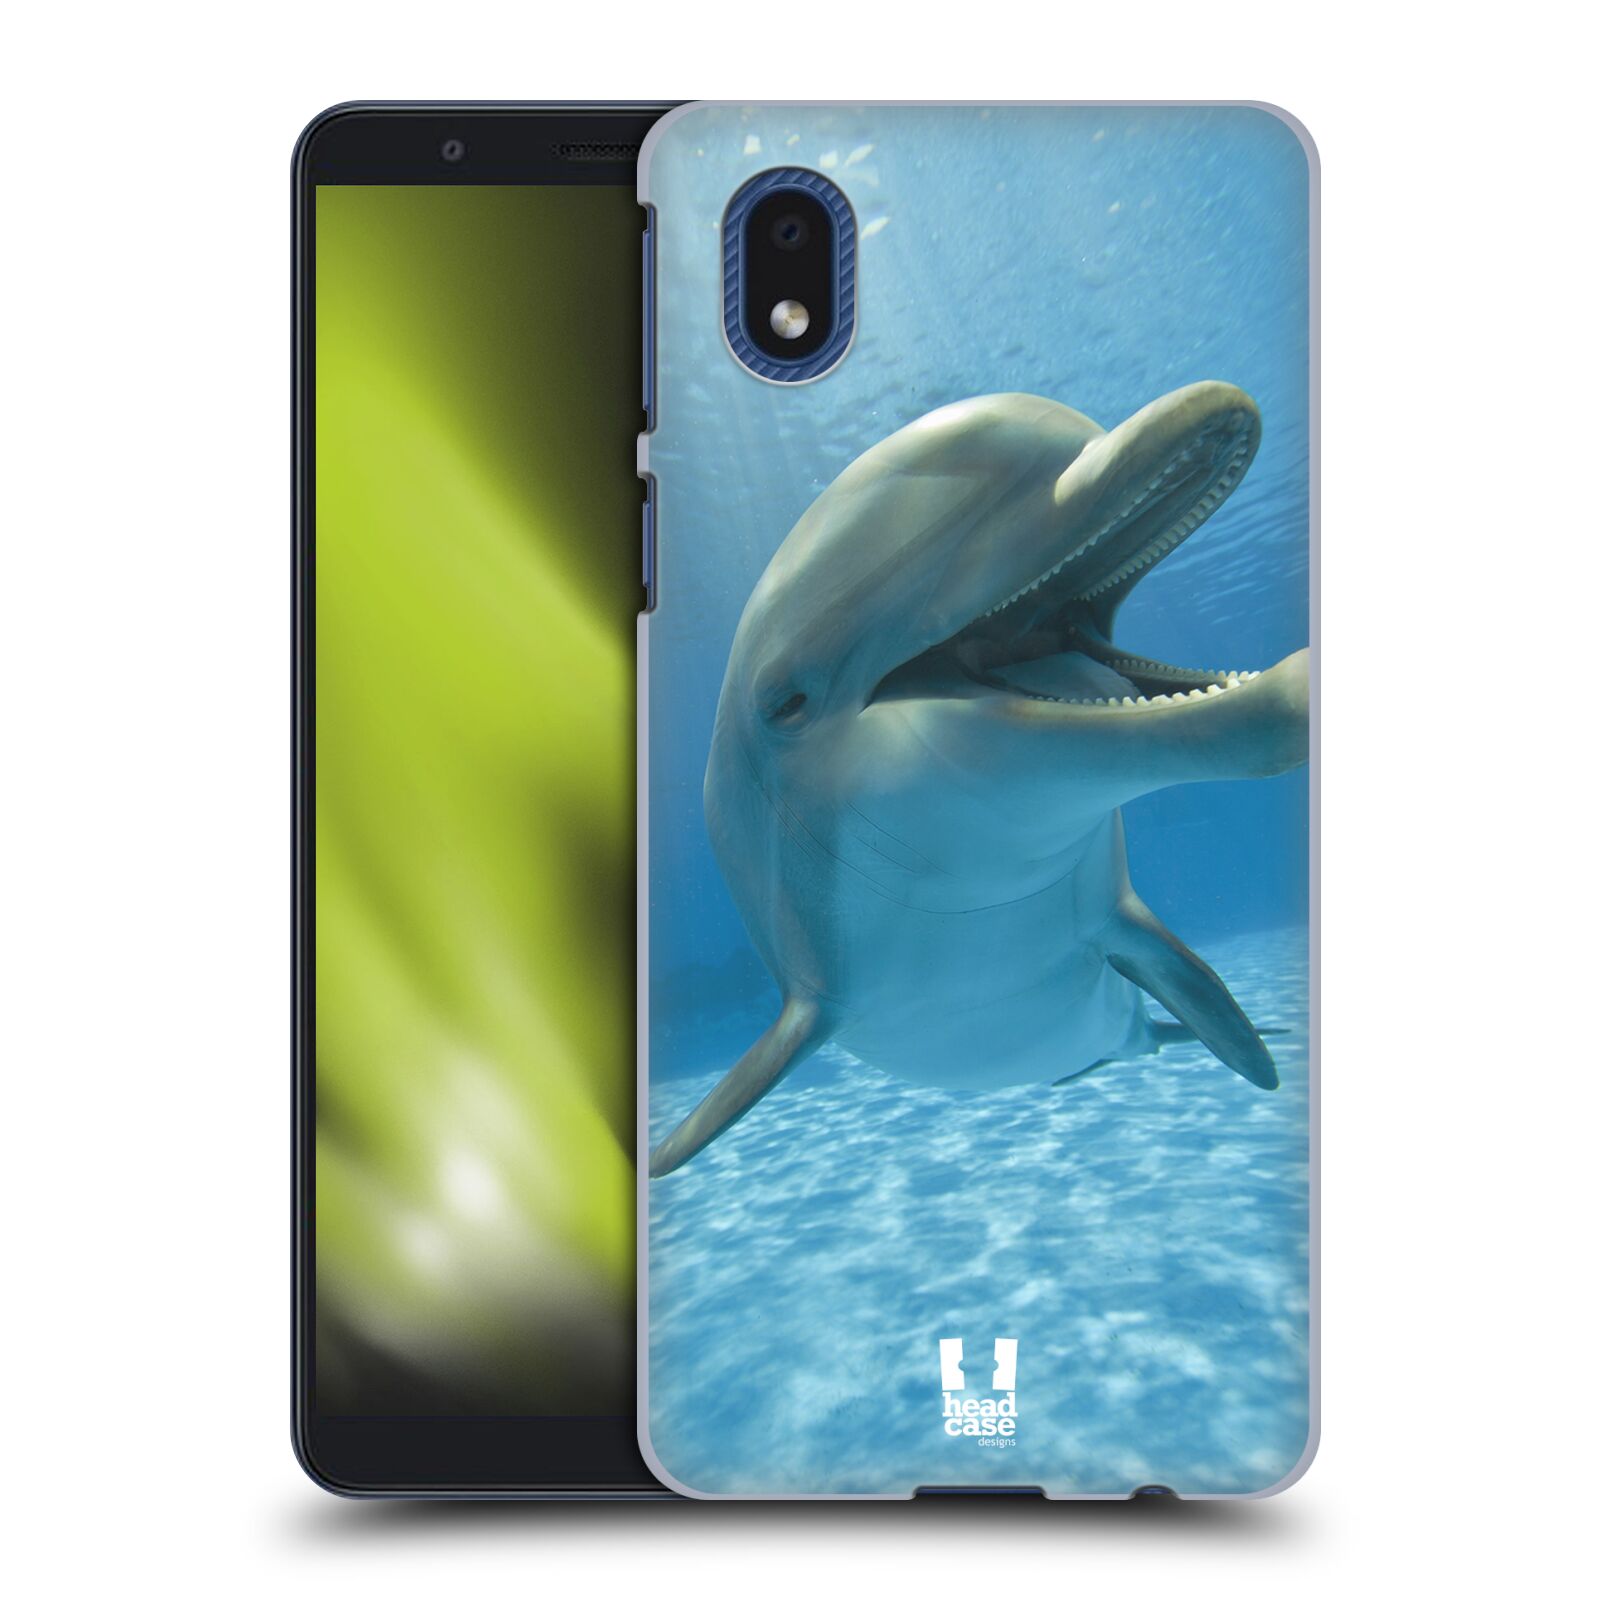 Zadní obal pro mobil Samsung Galaxy A01 CORE - HEAD CASE - Svět zvířat delfín v moři